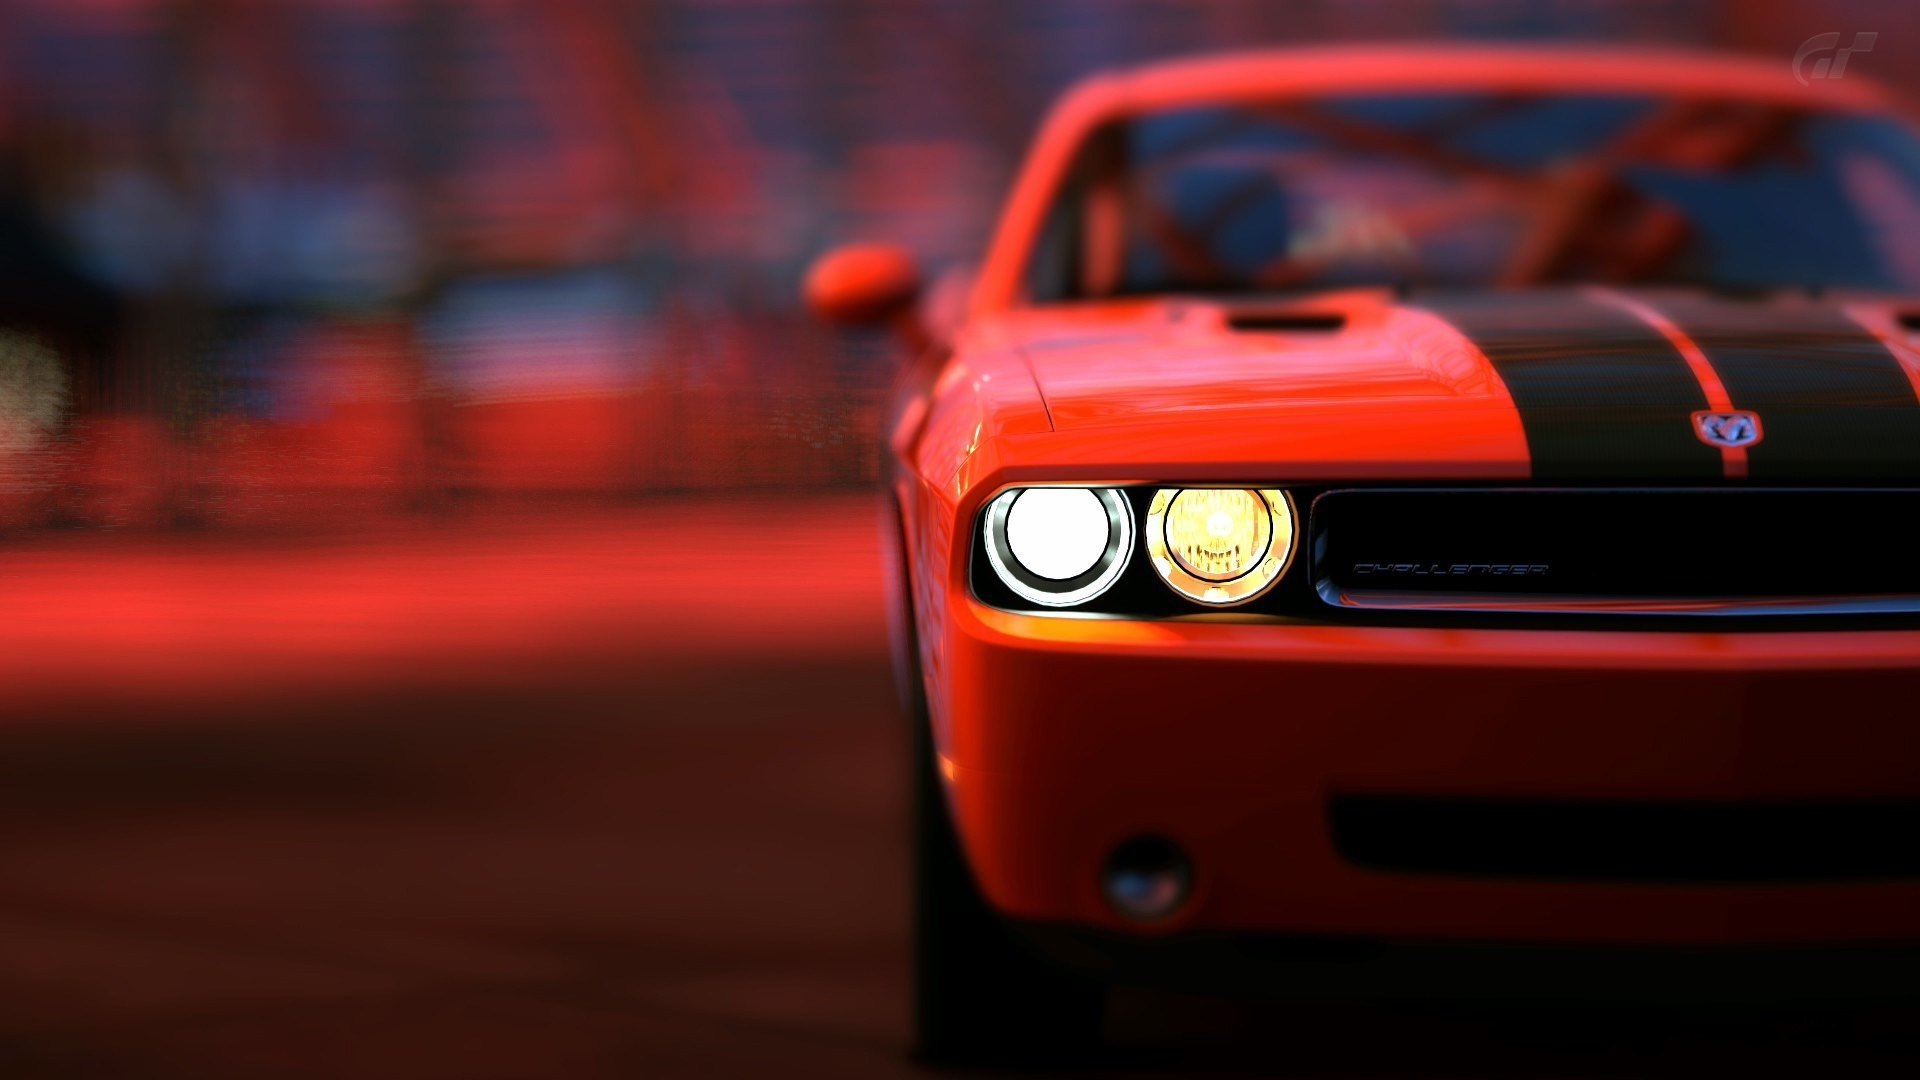 Dodge Challenger Srt8 HD Wallpaper Background Image